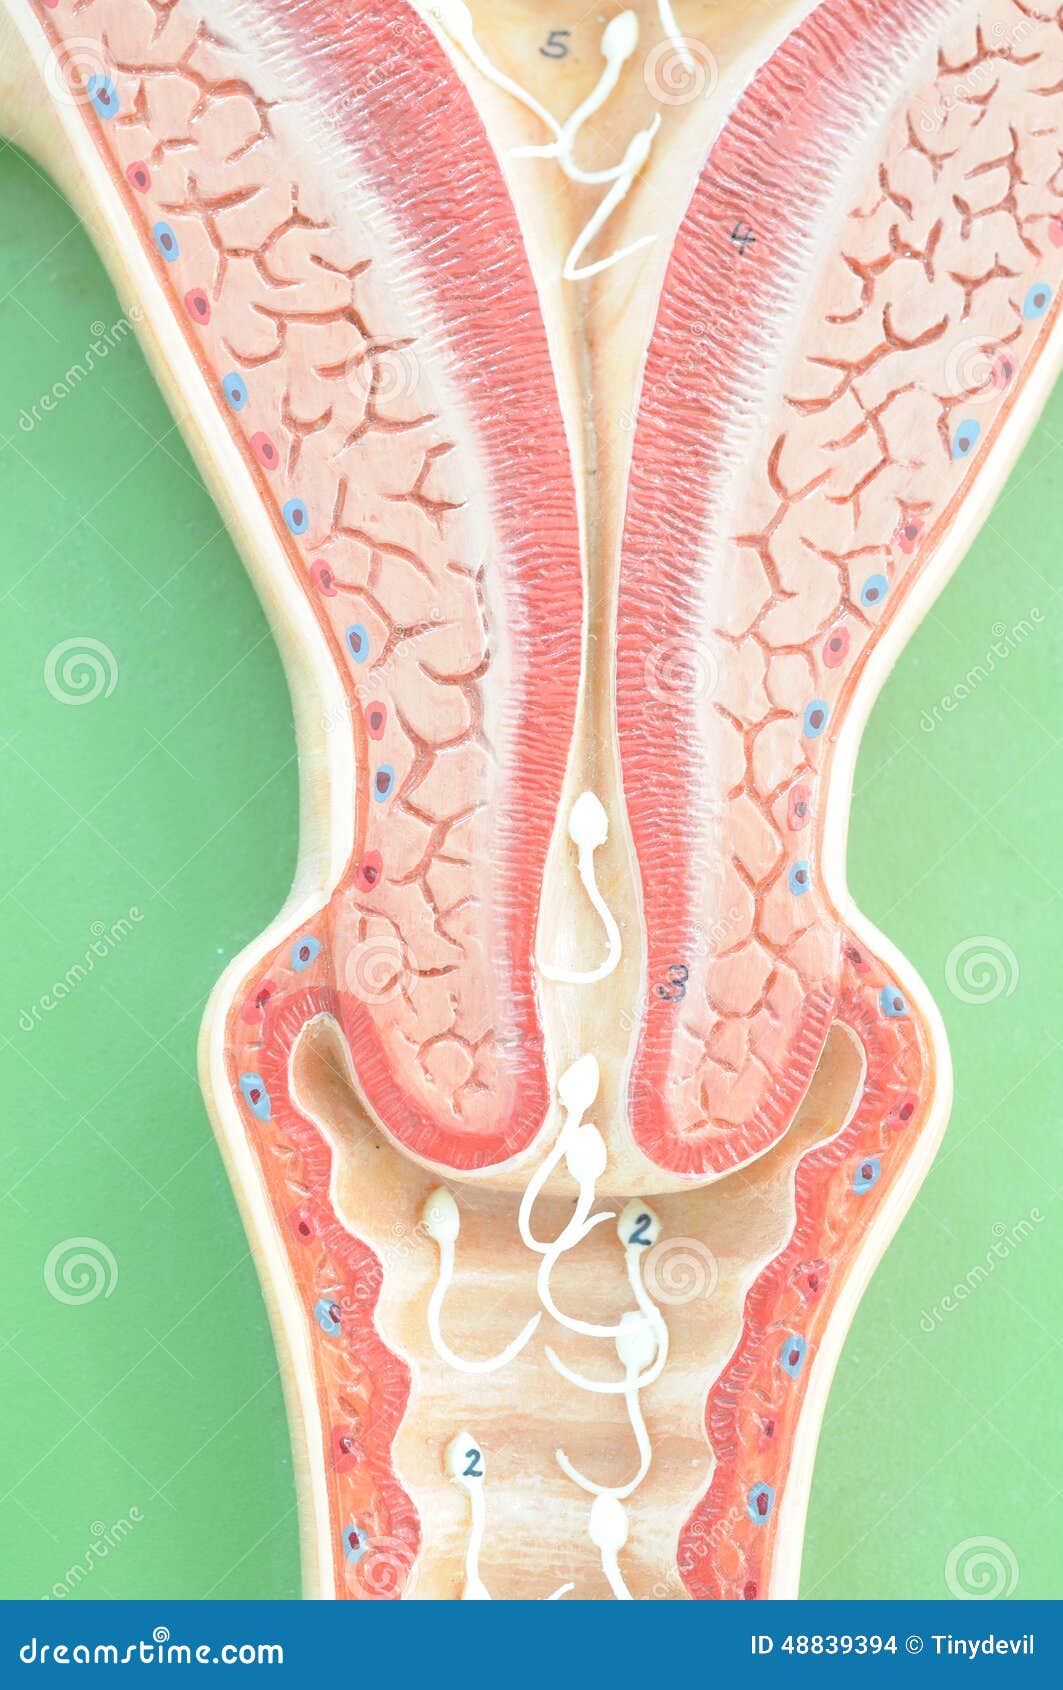 Uterus Of Human Stock Photo - Image: 48839394